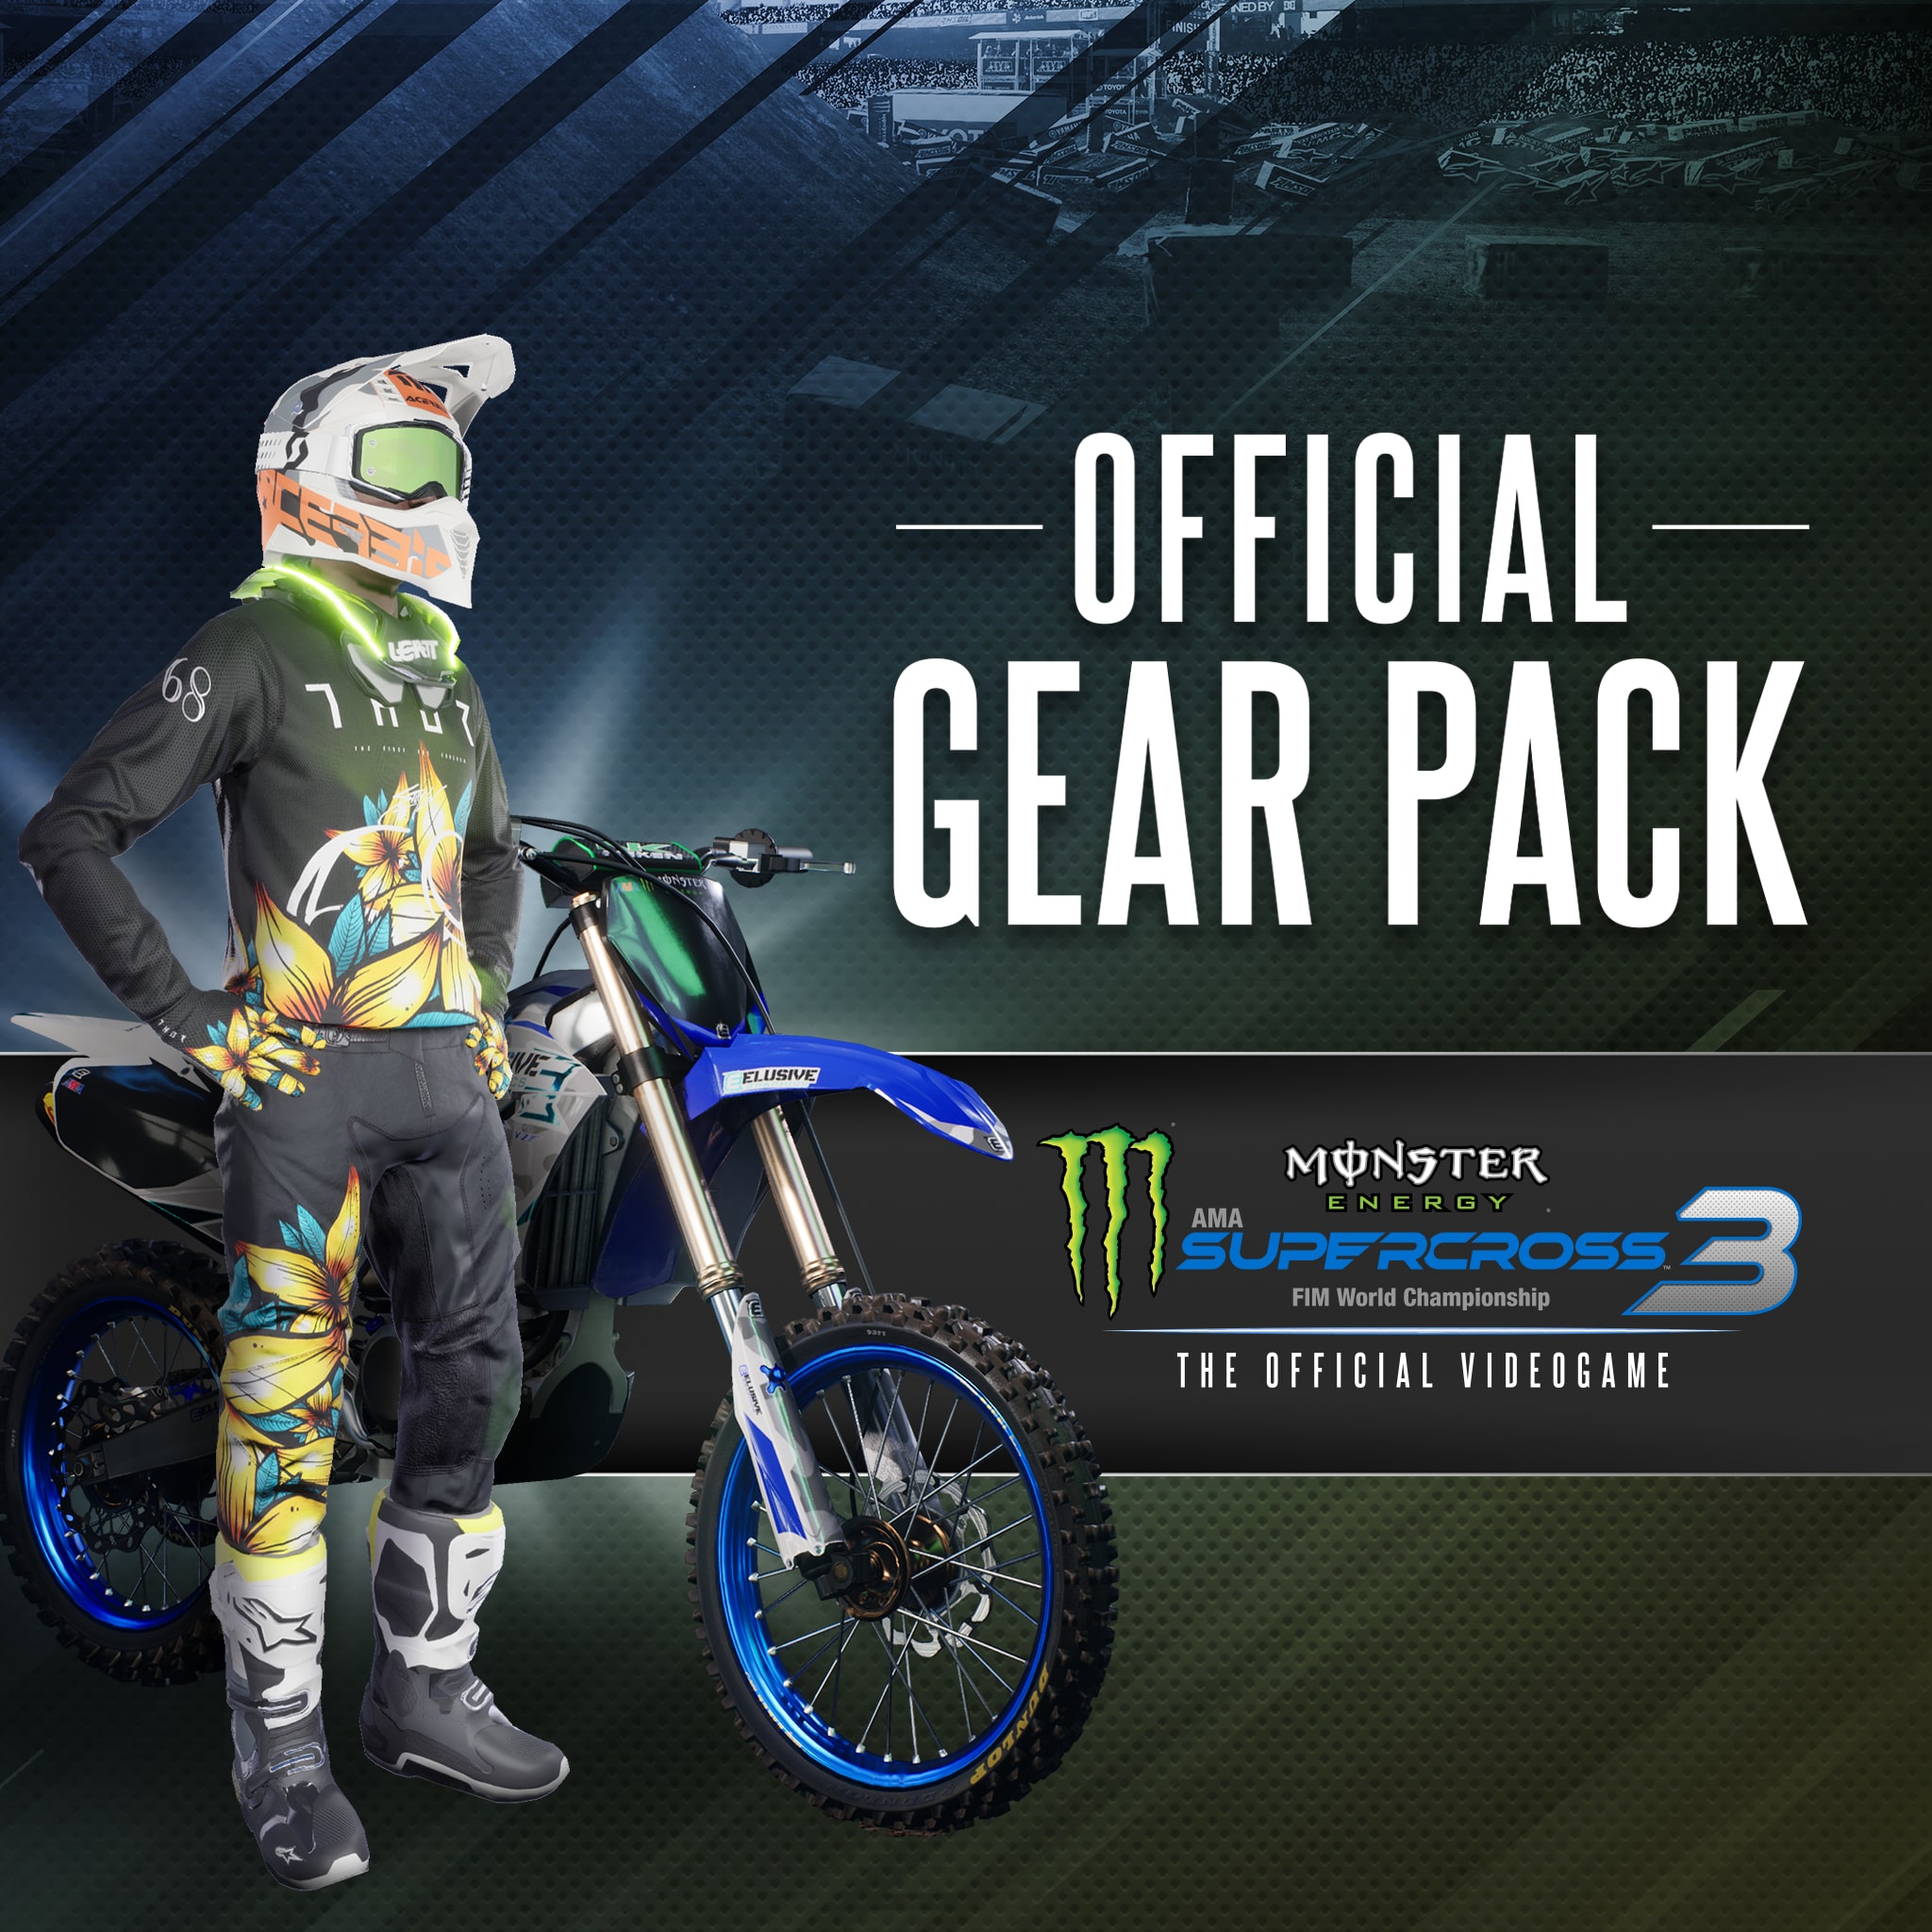 Monster Energy Supercross 3 - Official Gear Pack